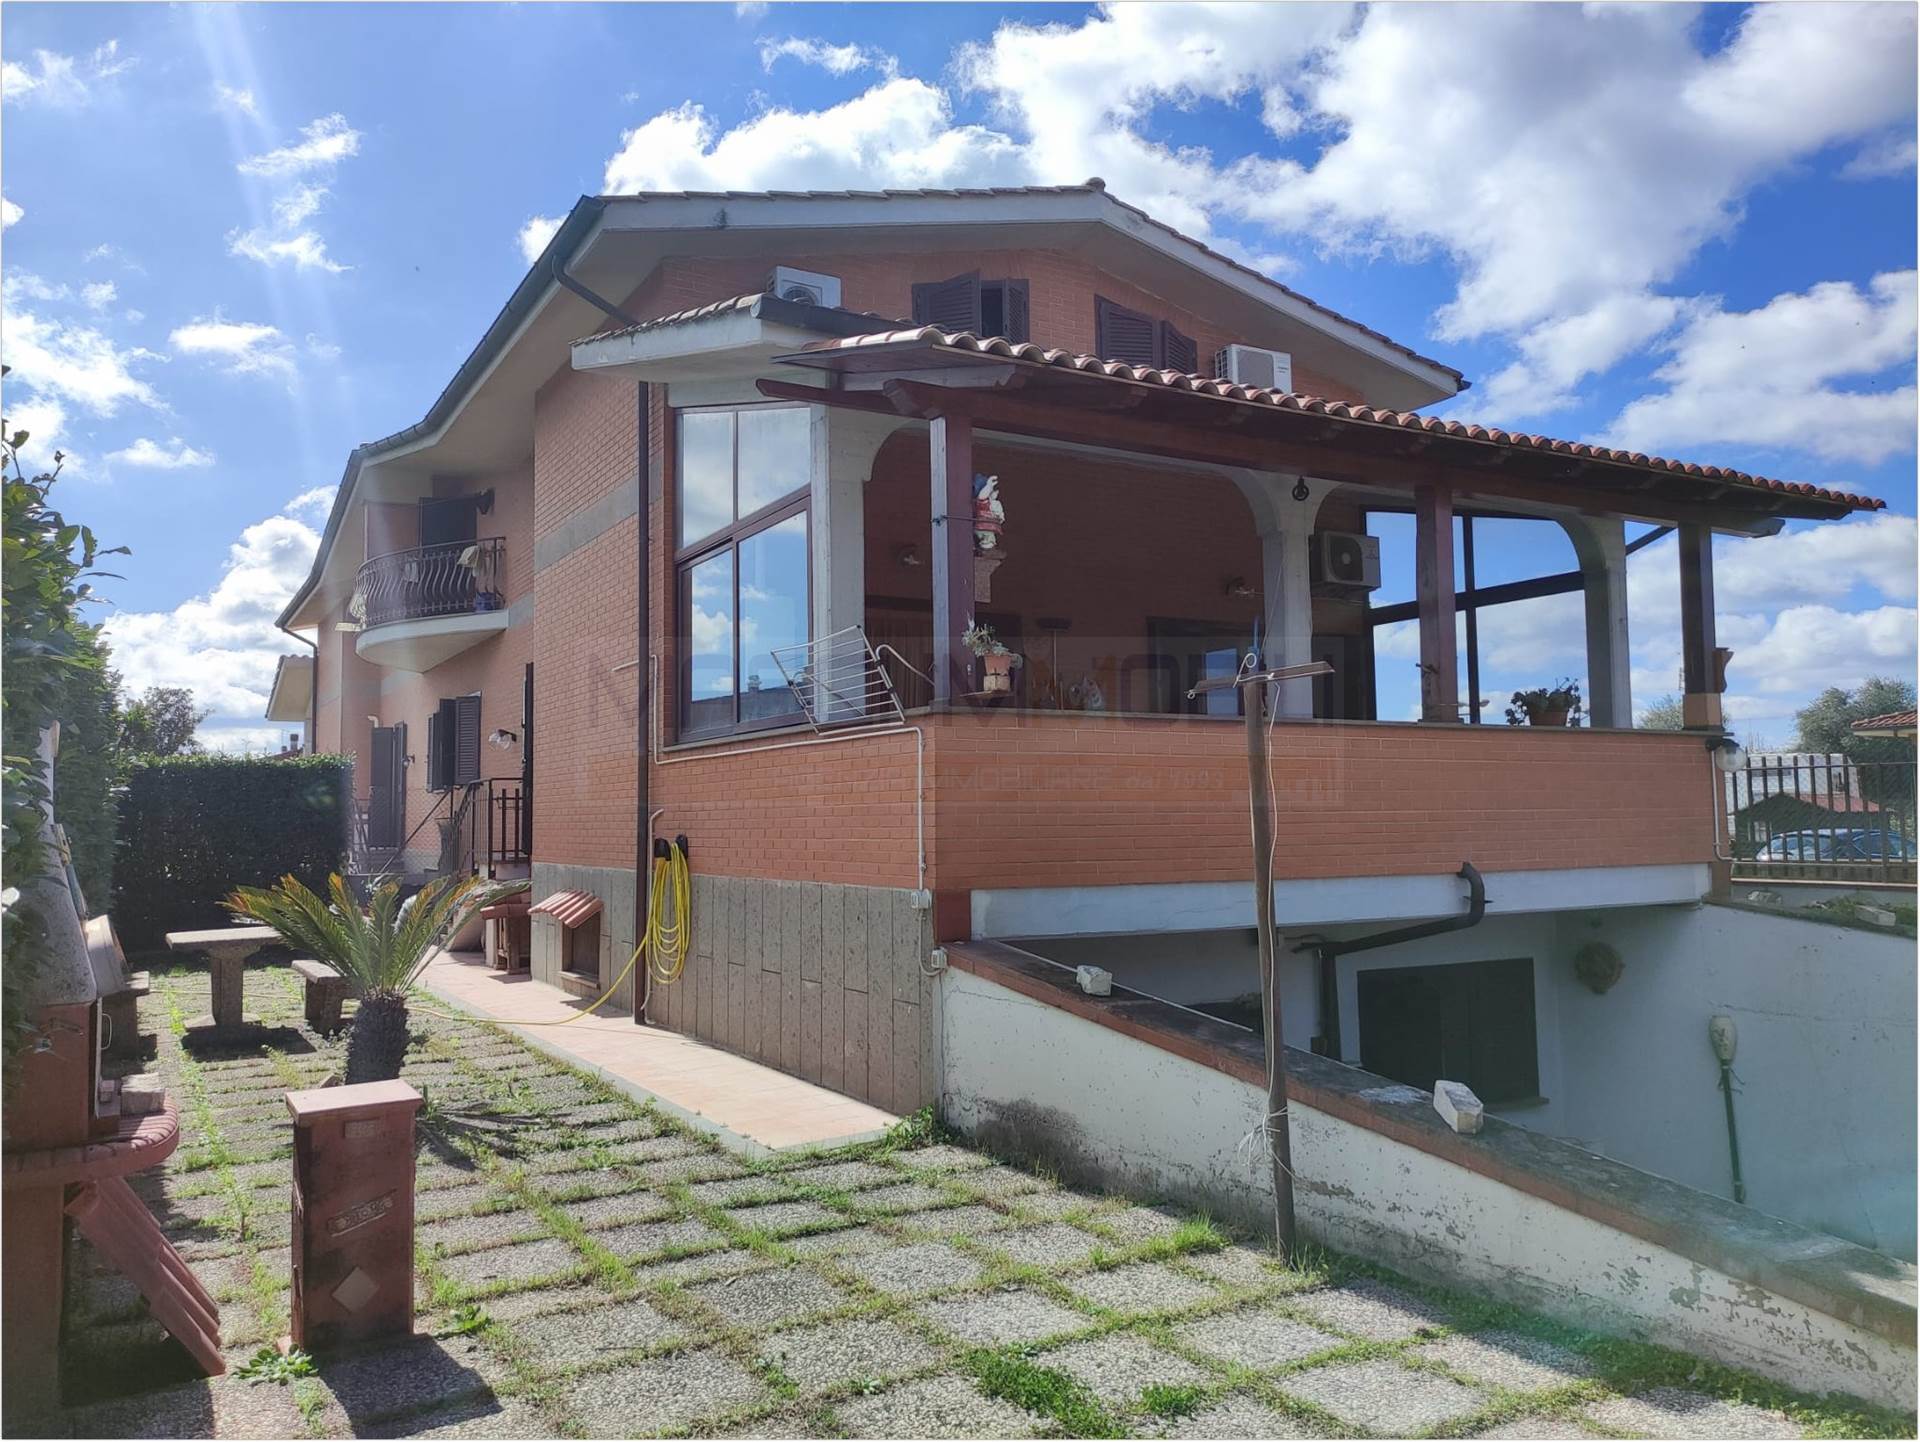 Villa Bifamiliare in vendita a Fiano Romano, 7 locali, prezzo € 280.000 | PortaleAgenzieImmobiliari.it